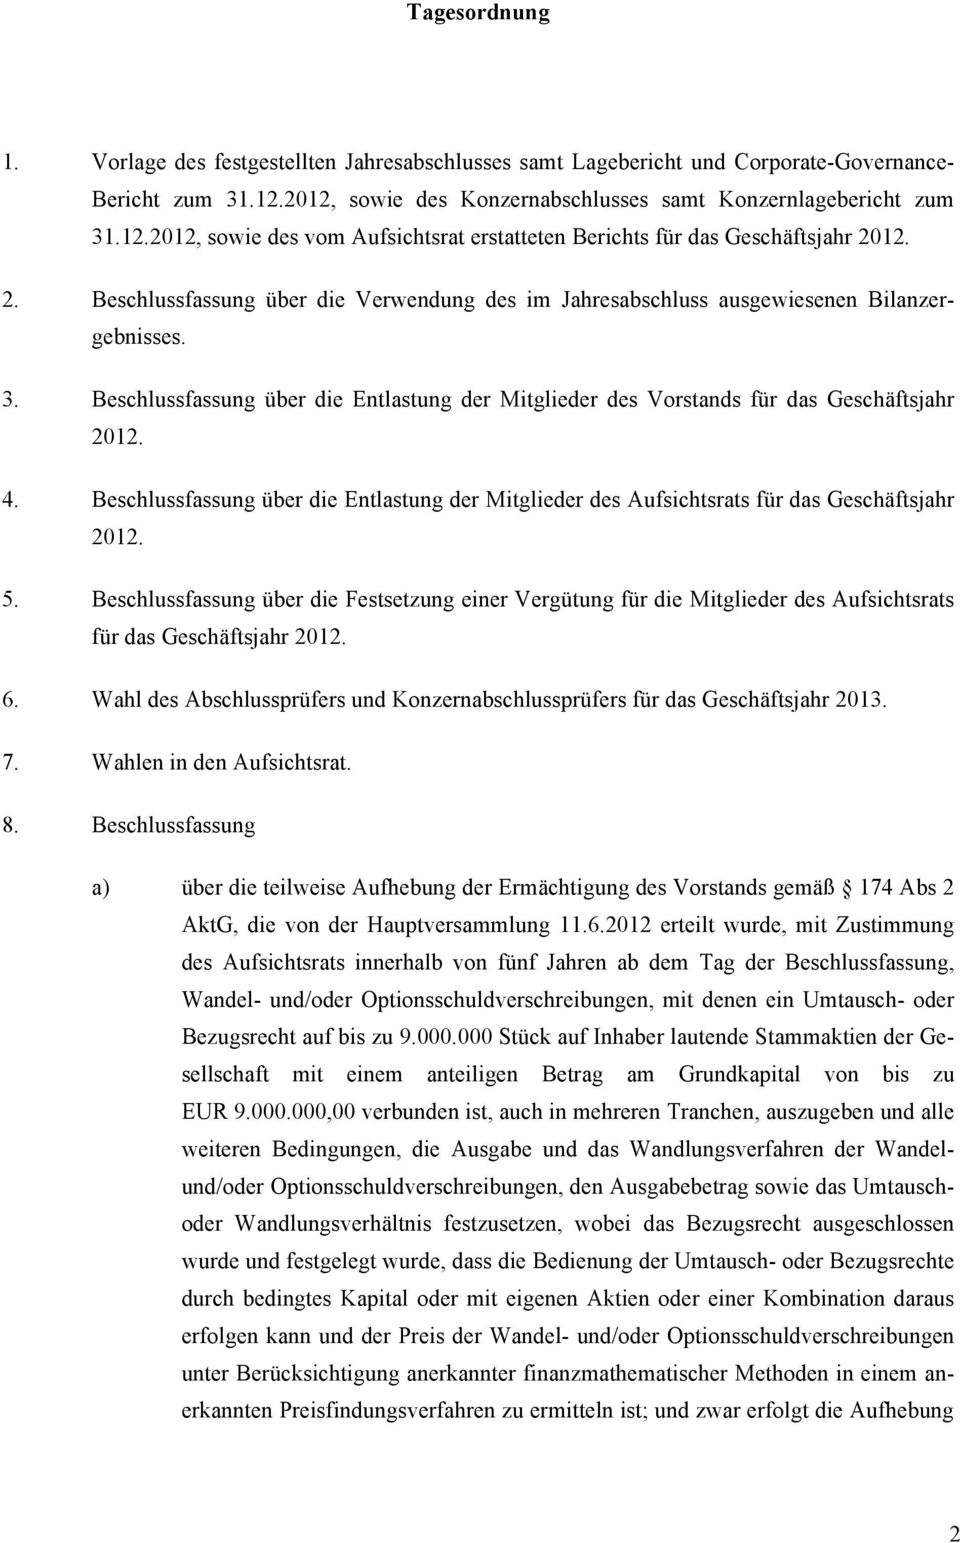 Beschlussfassung über die Entlastung der Mitglieder des Aufsichtsrats für das Geschäftsjahr 2012. 5.